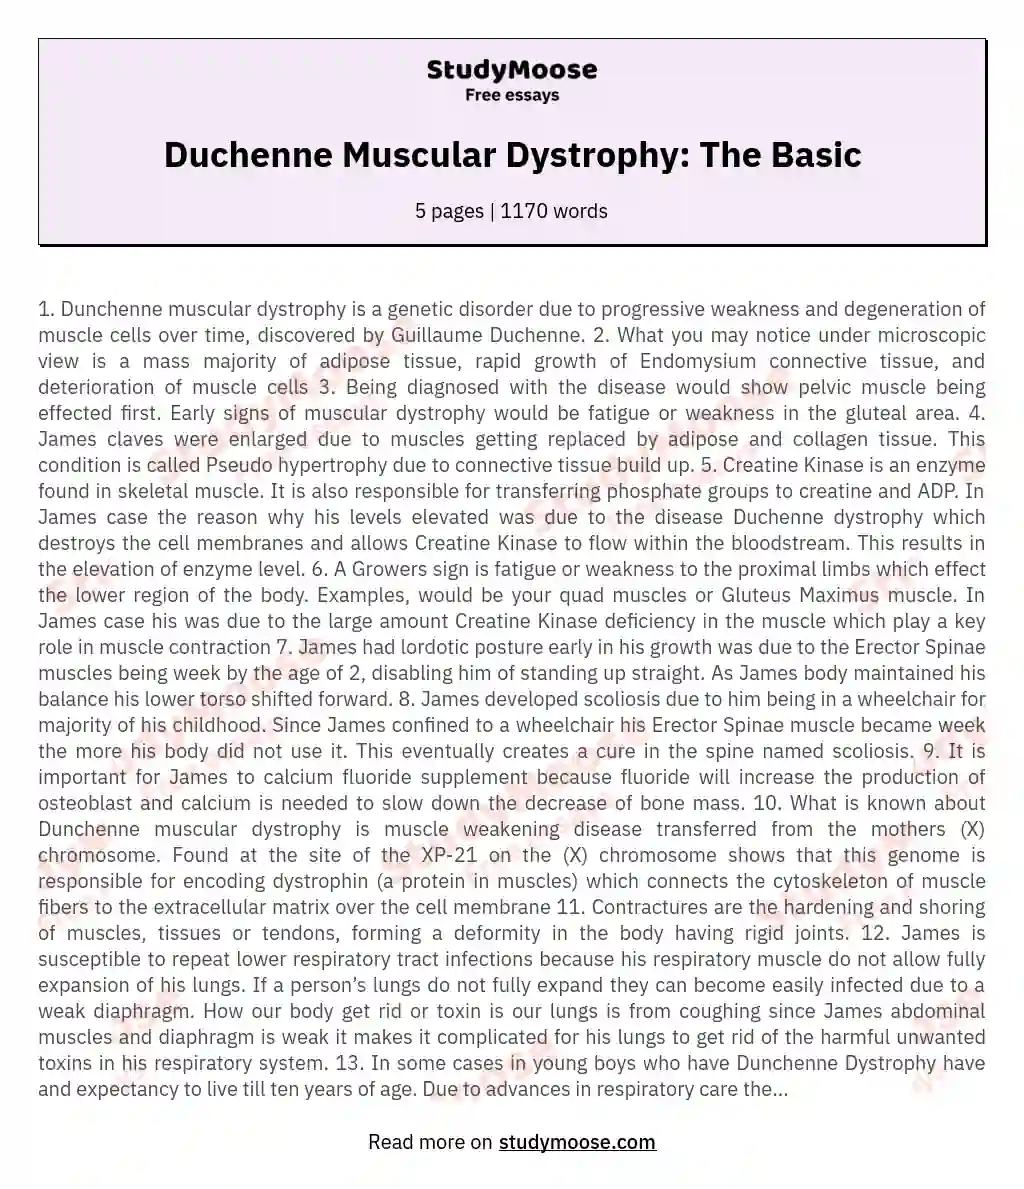 Duchenne Muscular Dystrophy: The Basic essay